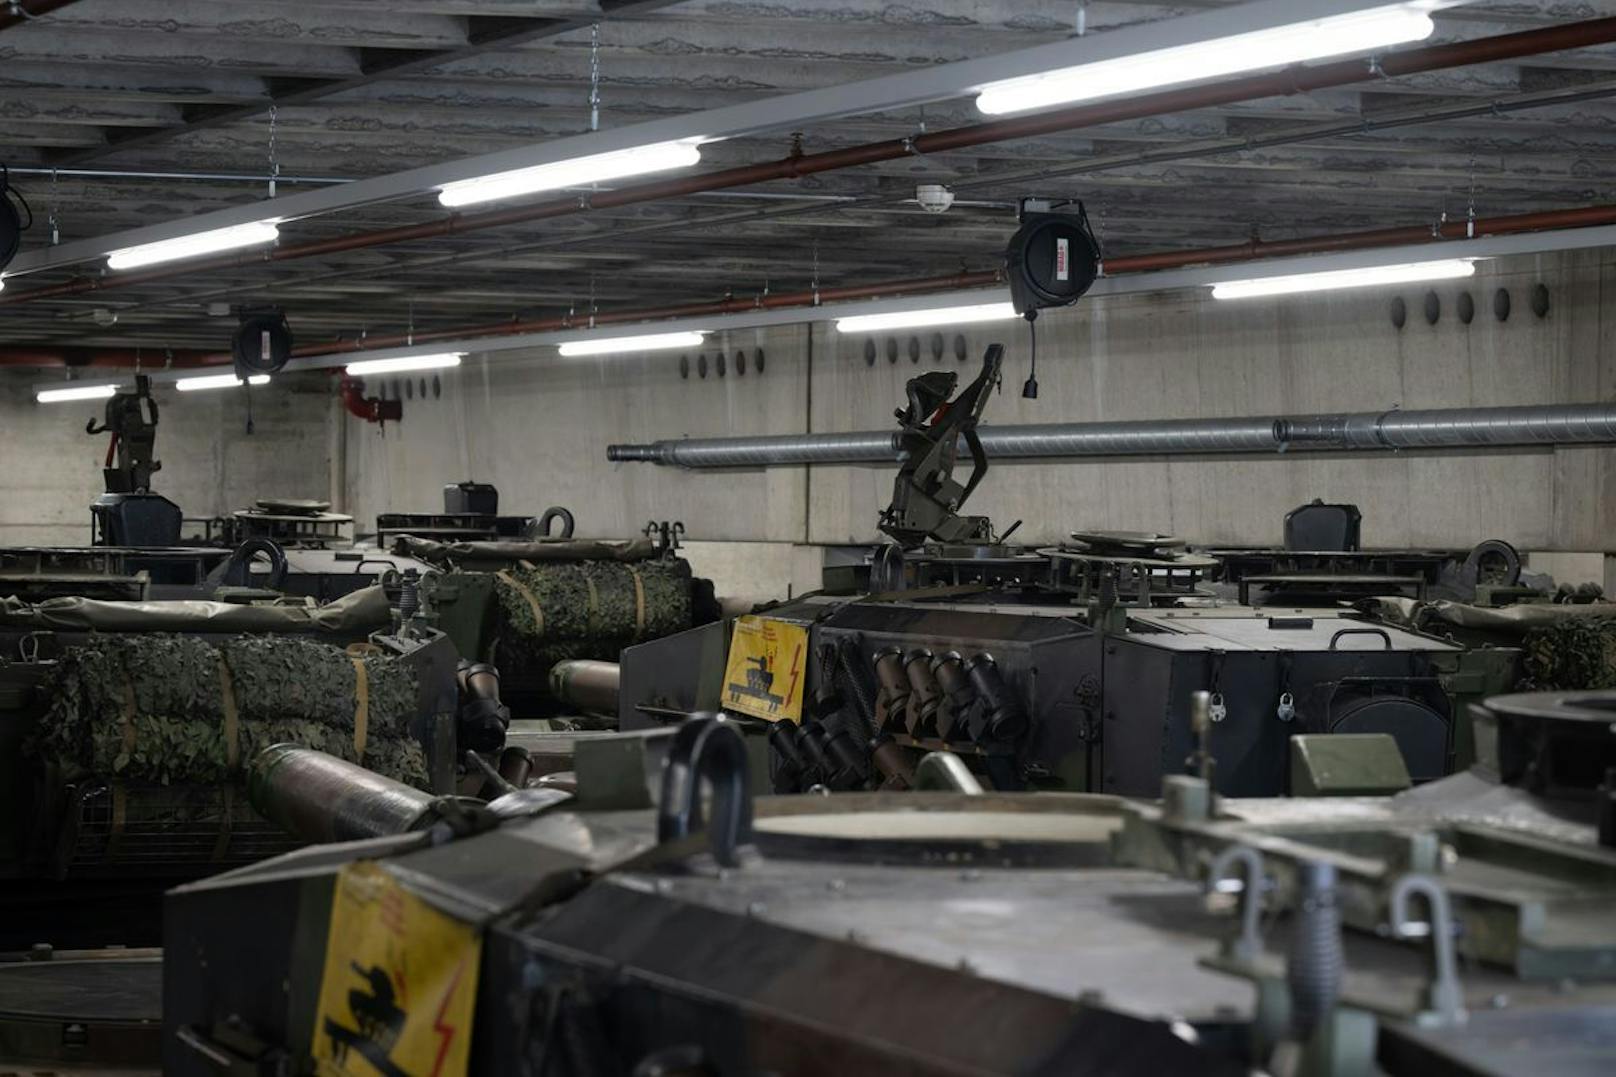 Stillgelegte "Panzer 87" vom Typ Leopard 2A4 WE der Schweizer Armee in Detailaufnahmen.